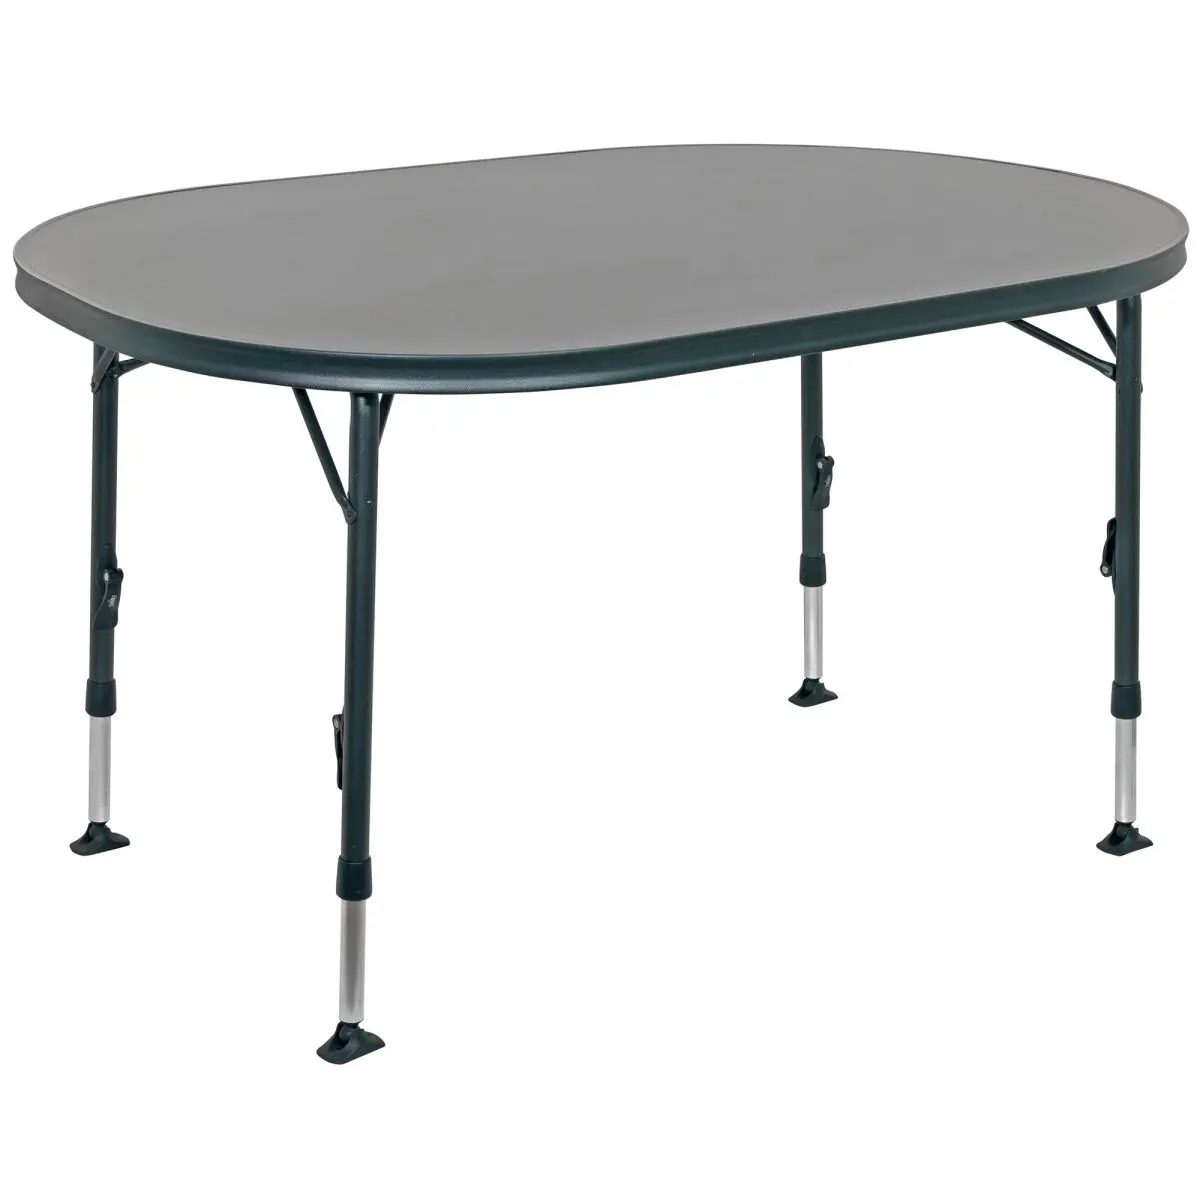 Kempingový stôl Seville - AP/275-80, 130 x 91 cm